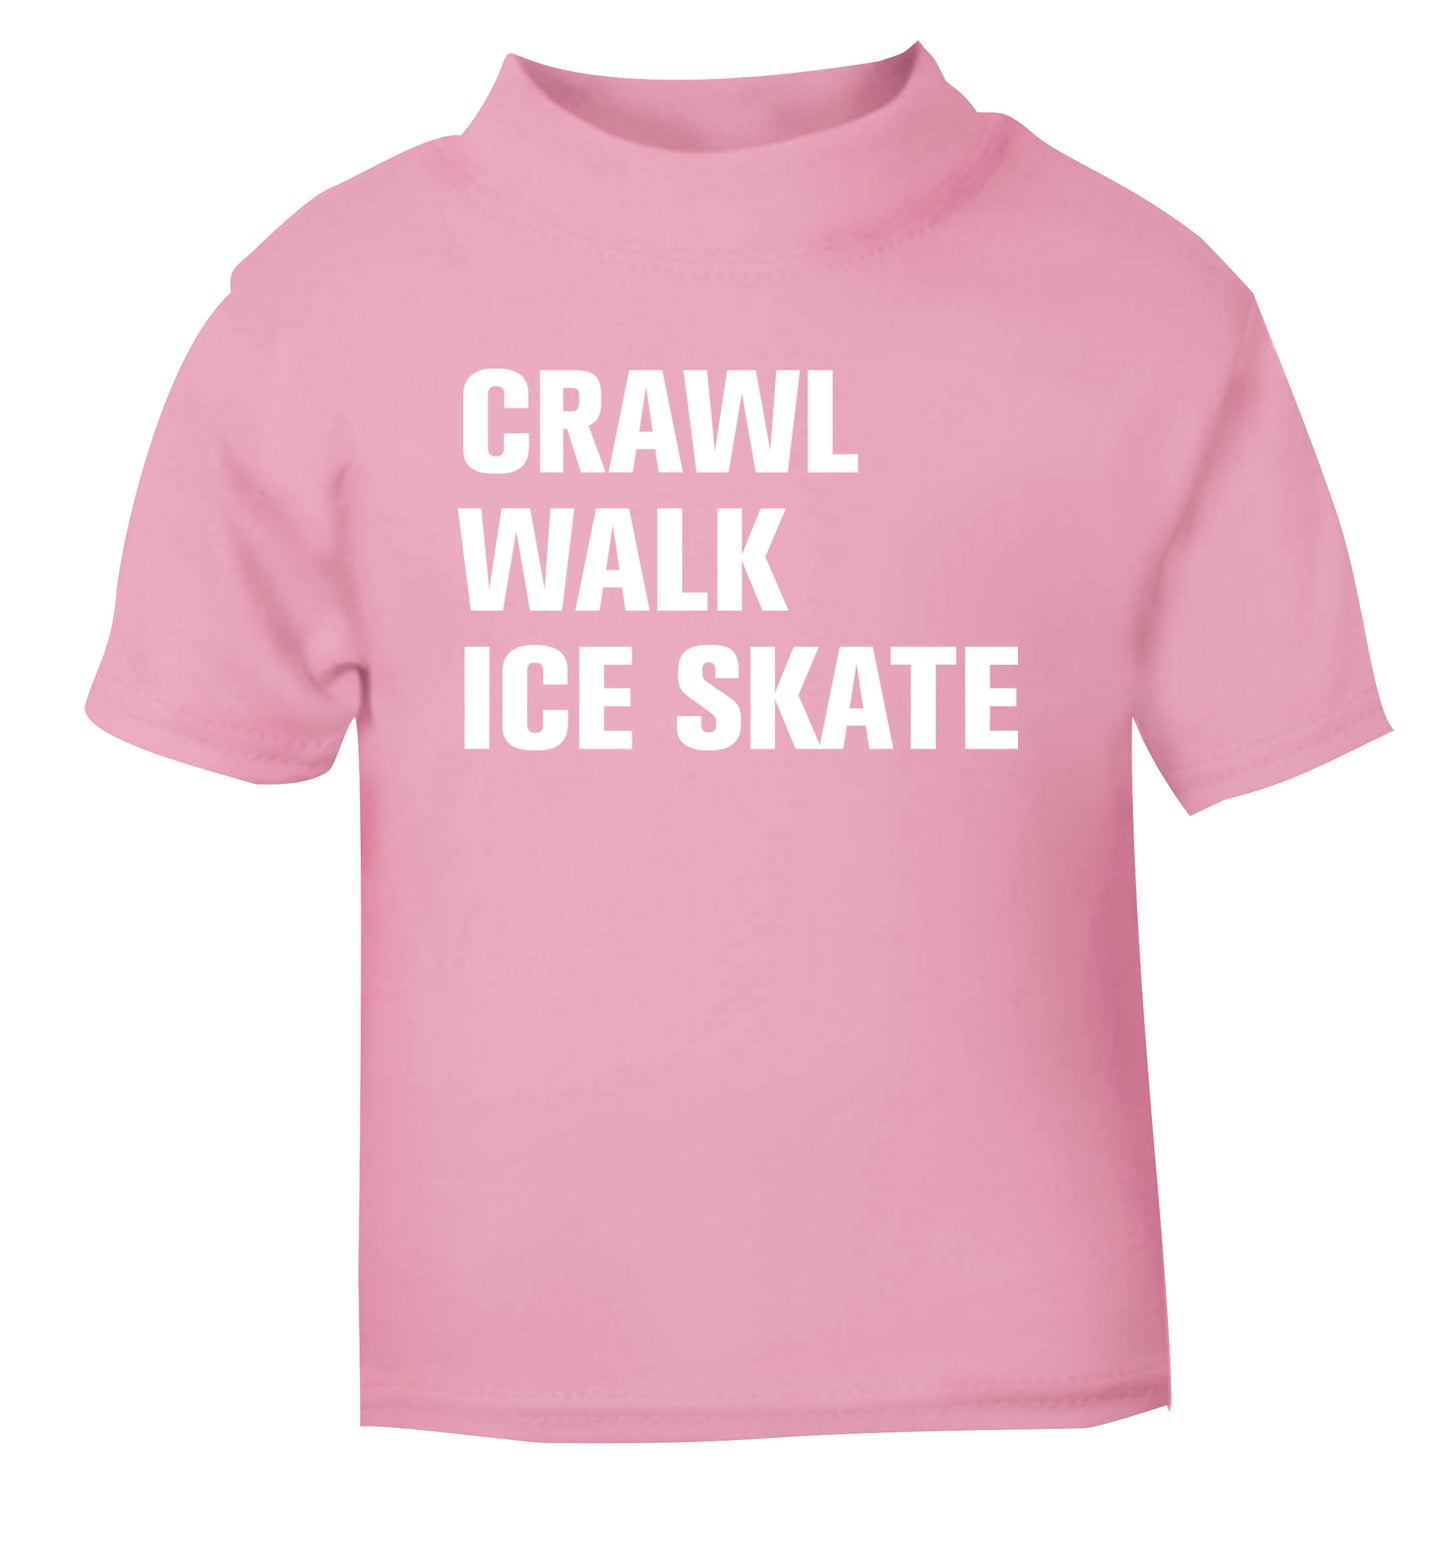 Crawl walk ice skate light pink Baby Toddler Tshirt 2 Years